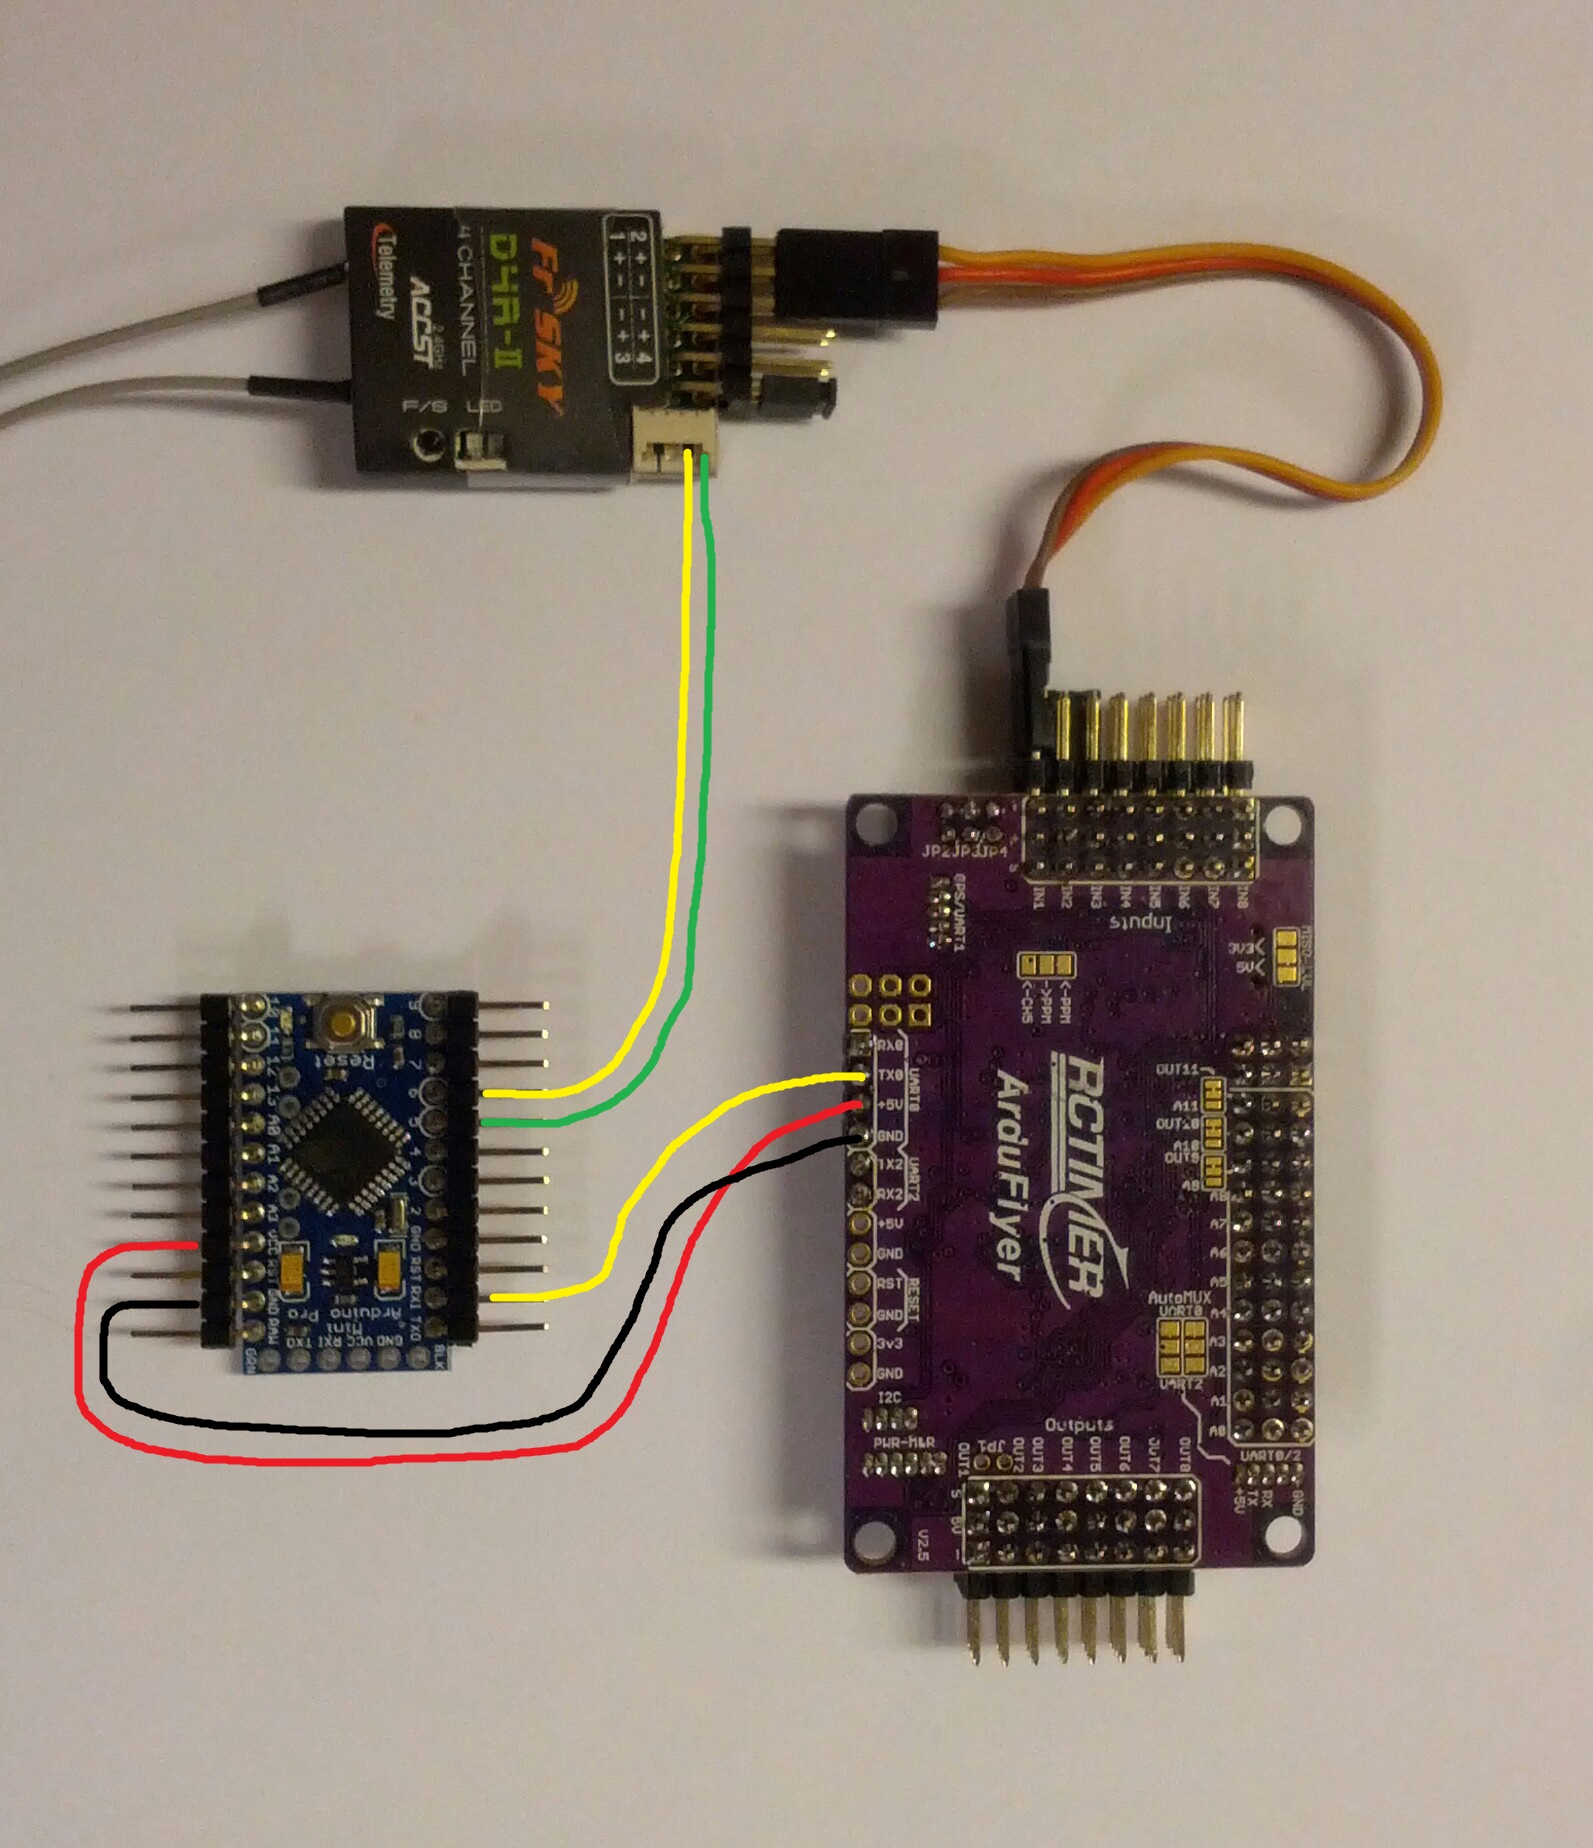 APM UART0 to Arduino pro mini